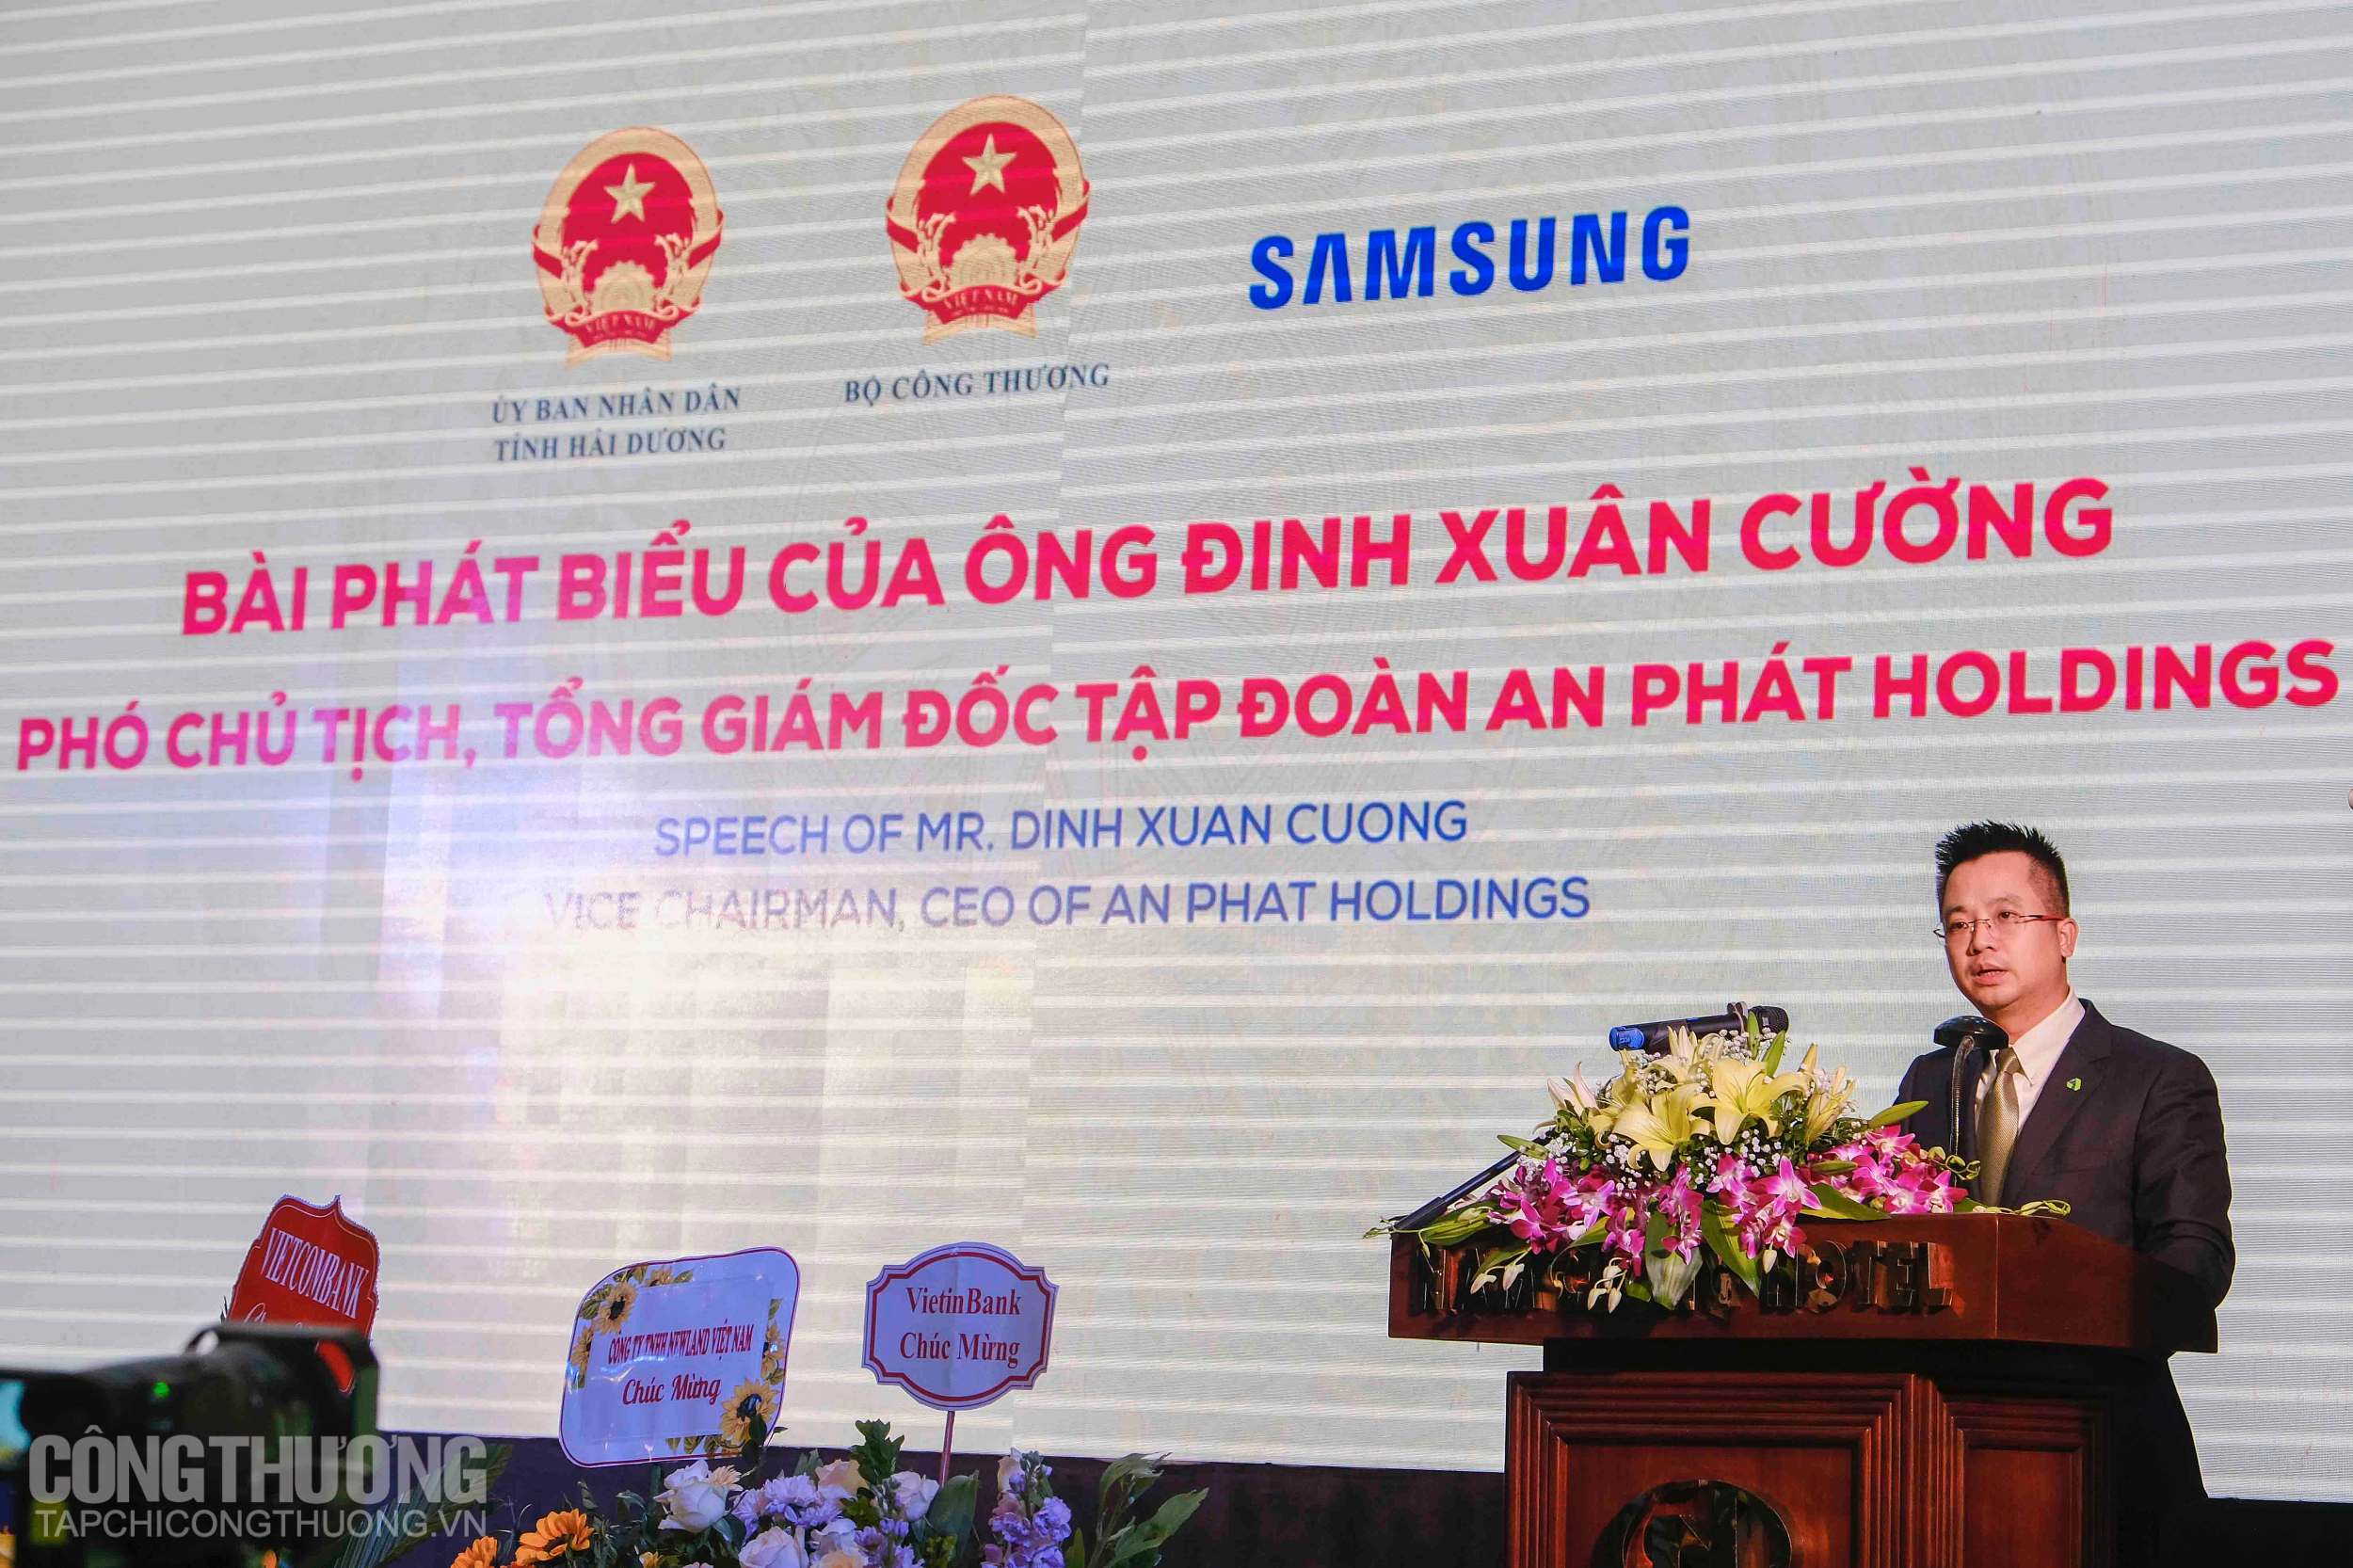 Ông Đinh Xuân Cường - Phó Chủ tịch, Tổng Giám đốc Tập đoàn An Phát Holdings bày tỏ sự tự hào khi là một phần trong chuỗi giá trị toàn cầu